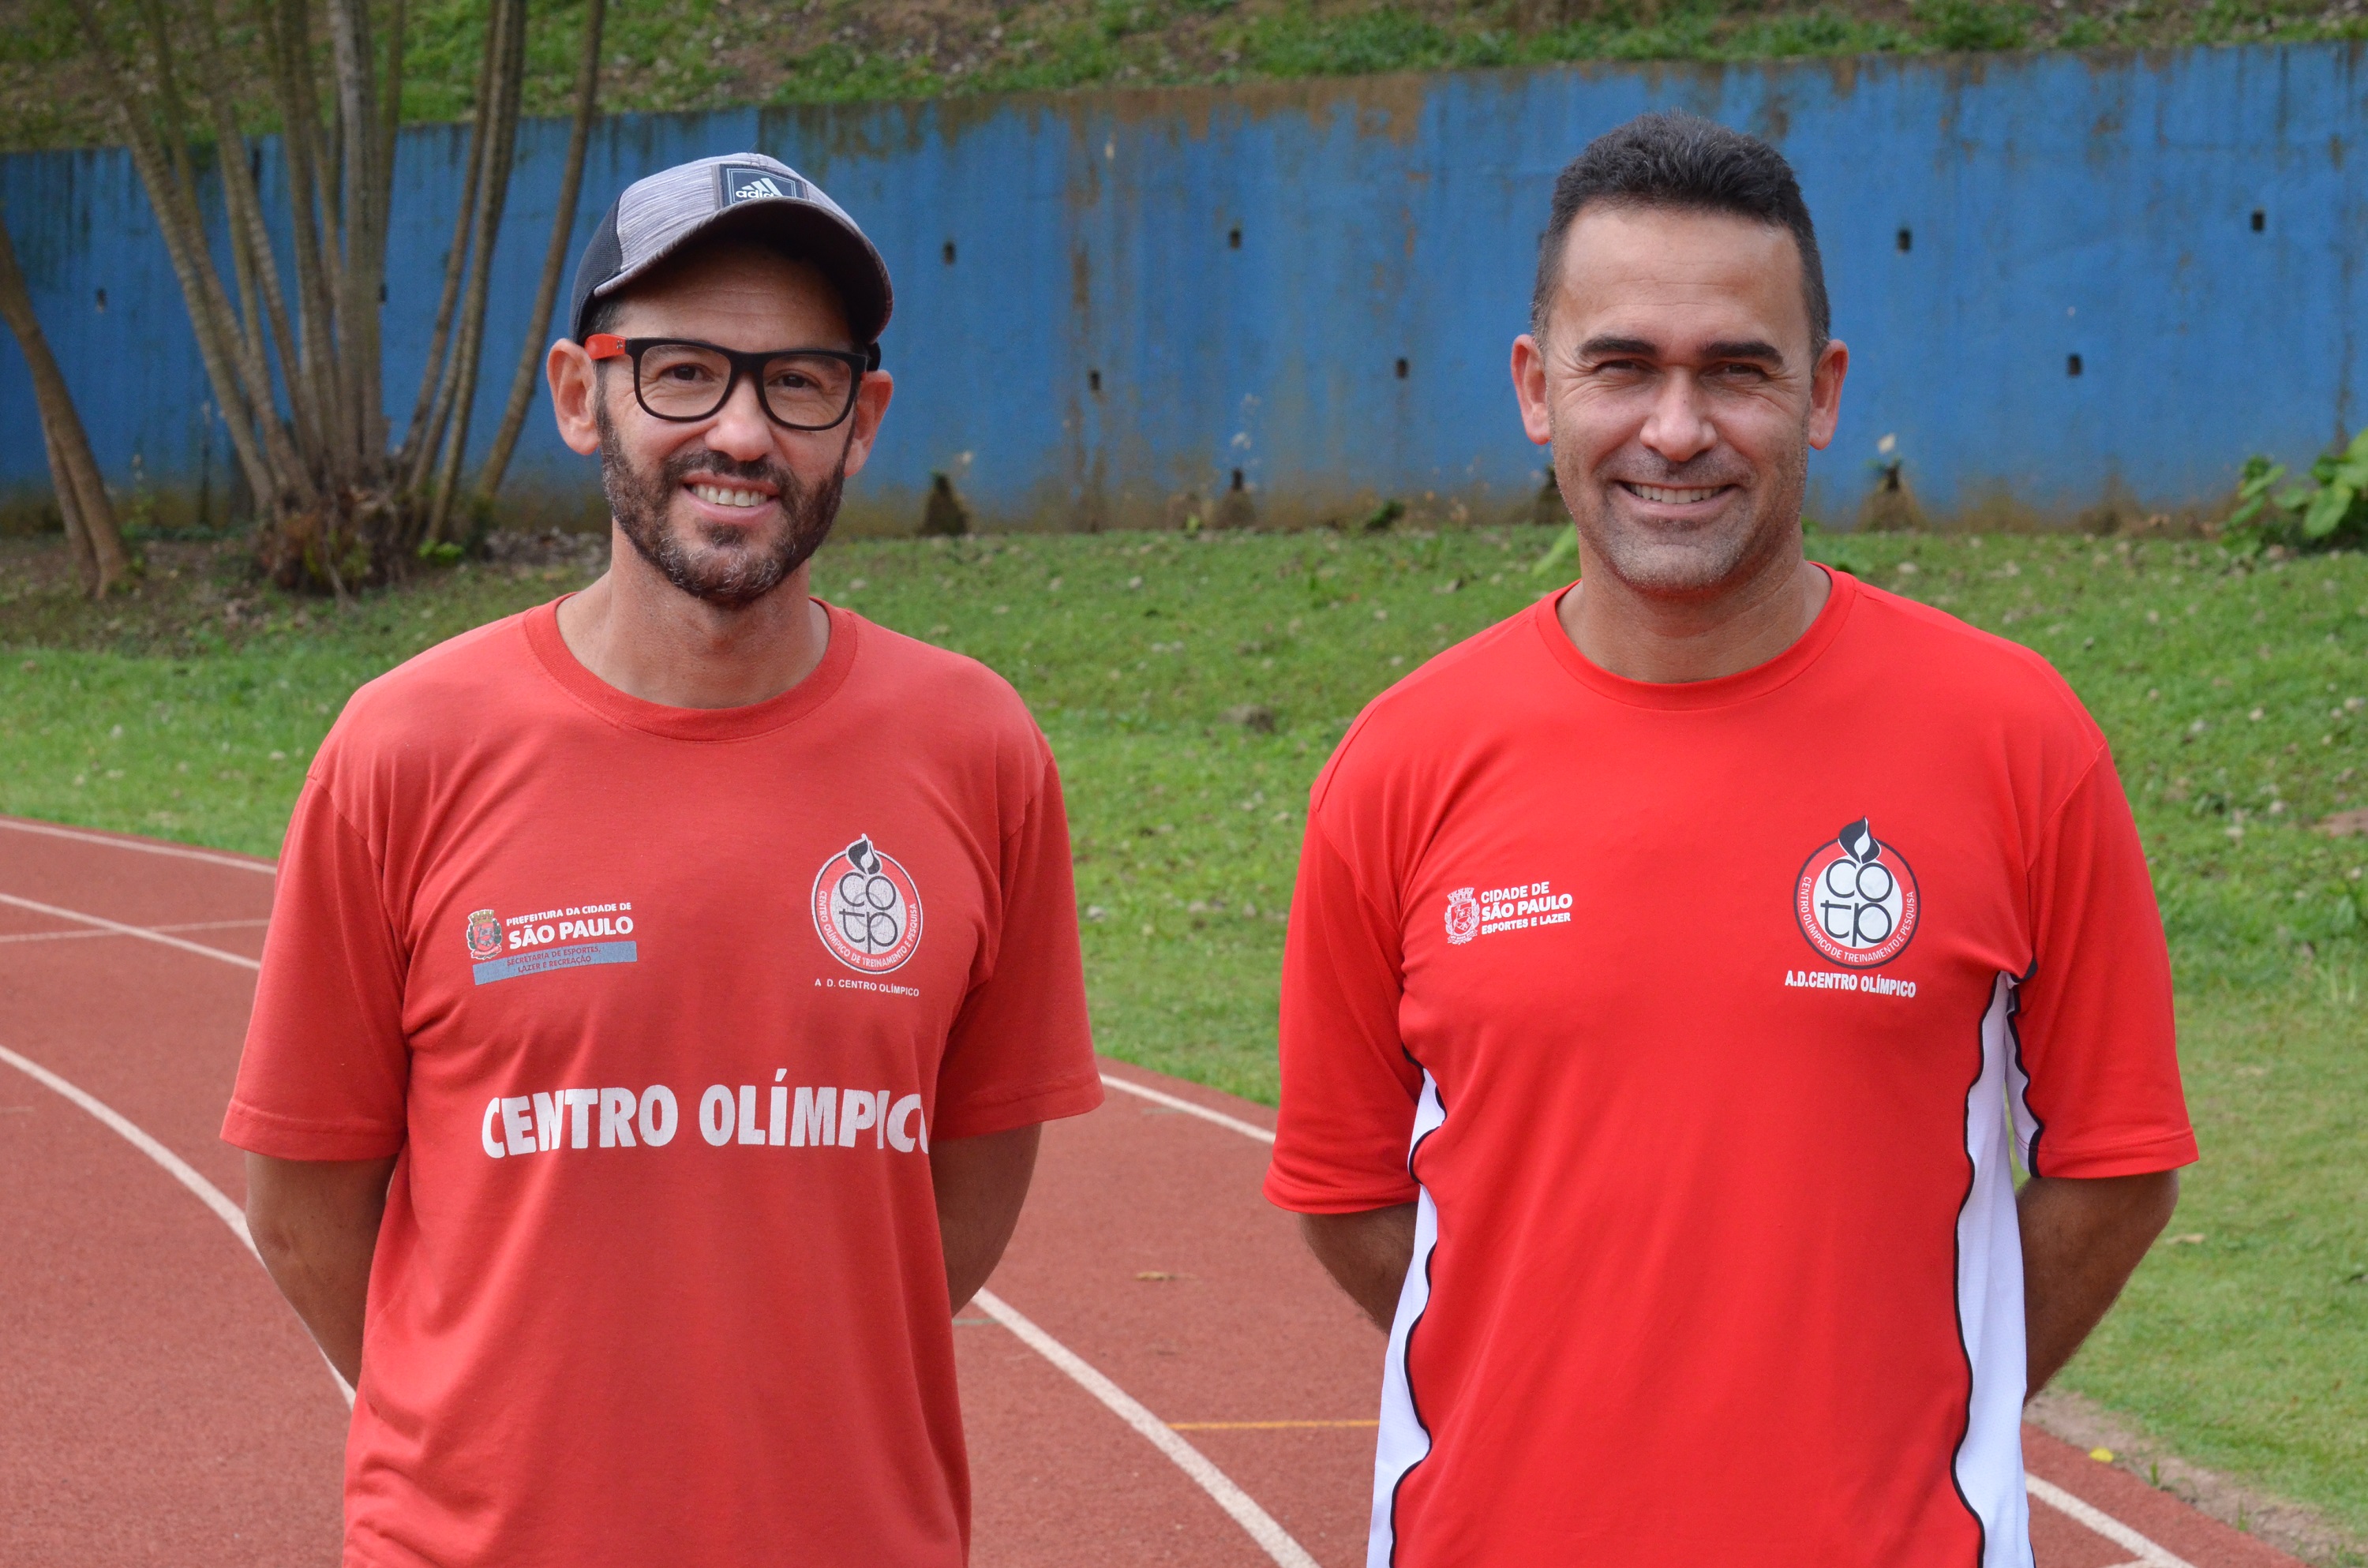 Na imagem, professores de atletismo convocado para os Jogos Pan-Americanos Juniores. Alexandre Morato, 49, foi convocado como treinador e Victor Fernandes, 42, irá como treinador chefe masculino.